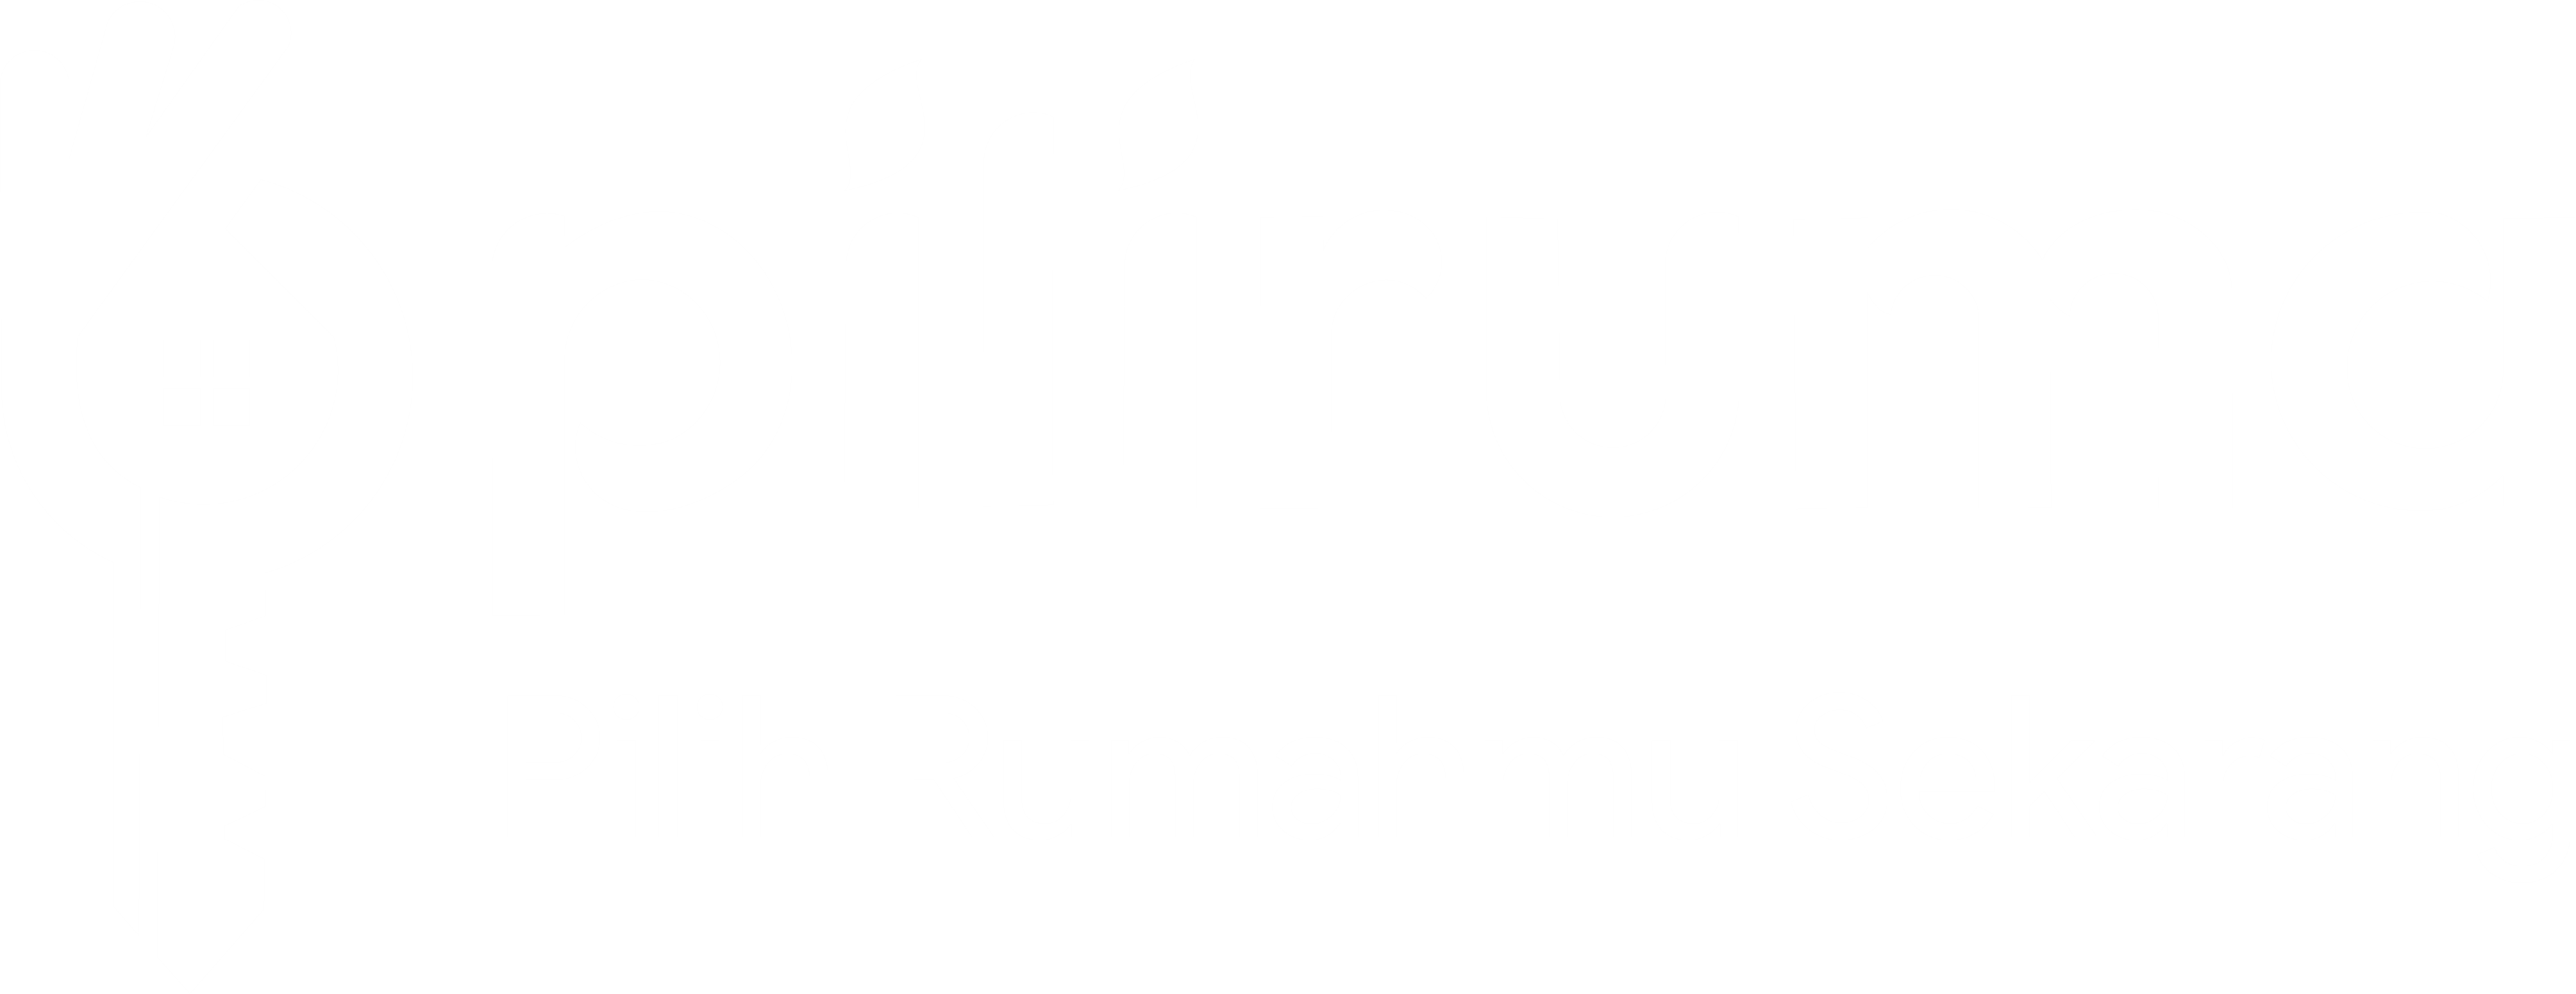 Piliruma.co.id : Situs Jual Beli Properti, Rumah & Apartemen